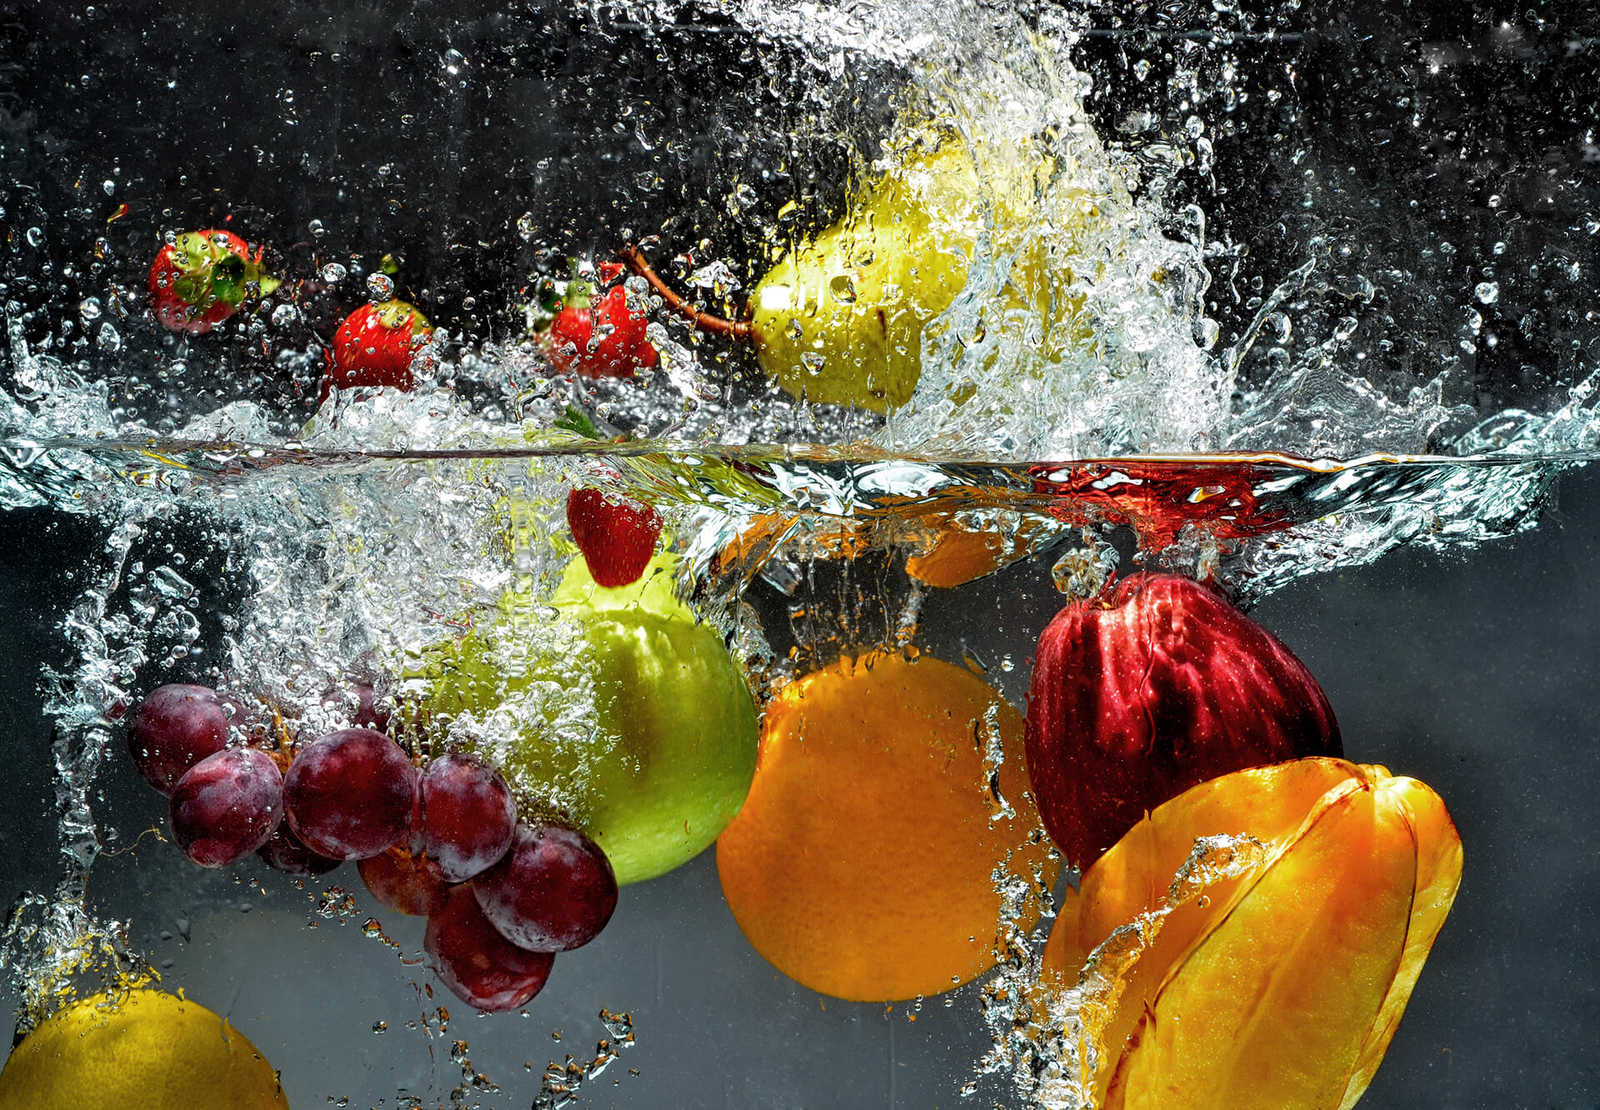         Fruit mural: apple, orange, grapes & strawberries
    